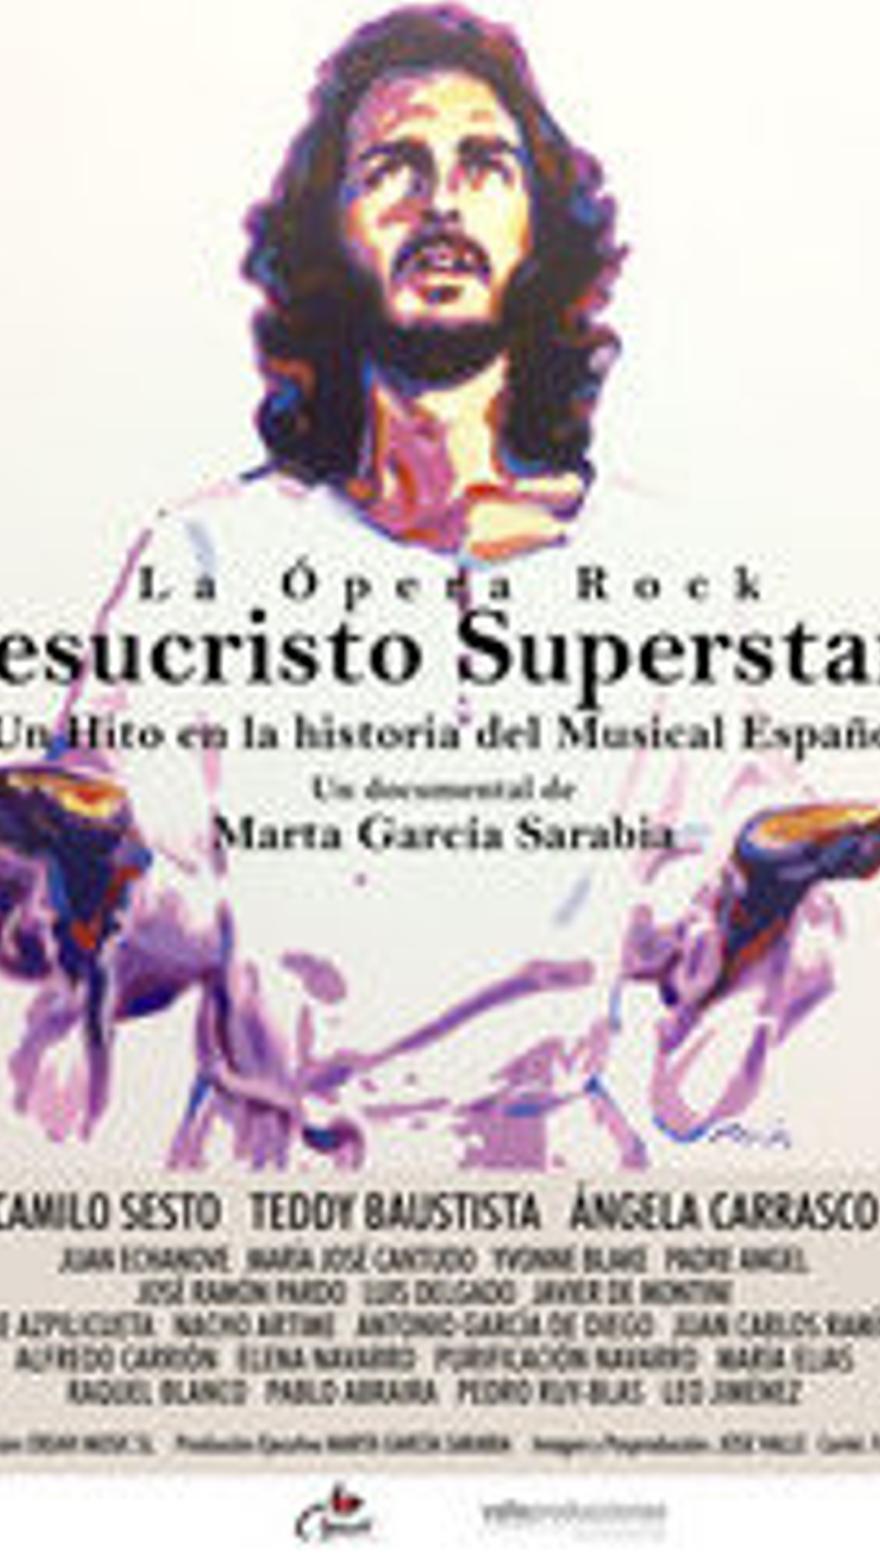 La ópera rock Jesucristo Superstar. Un hito en la historia del musical español